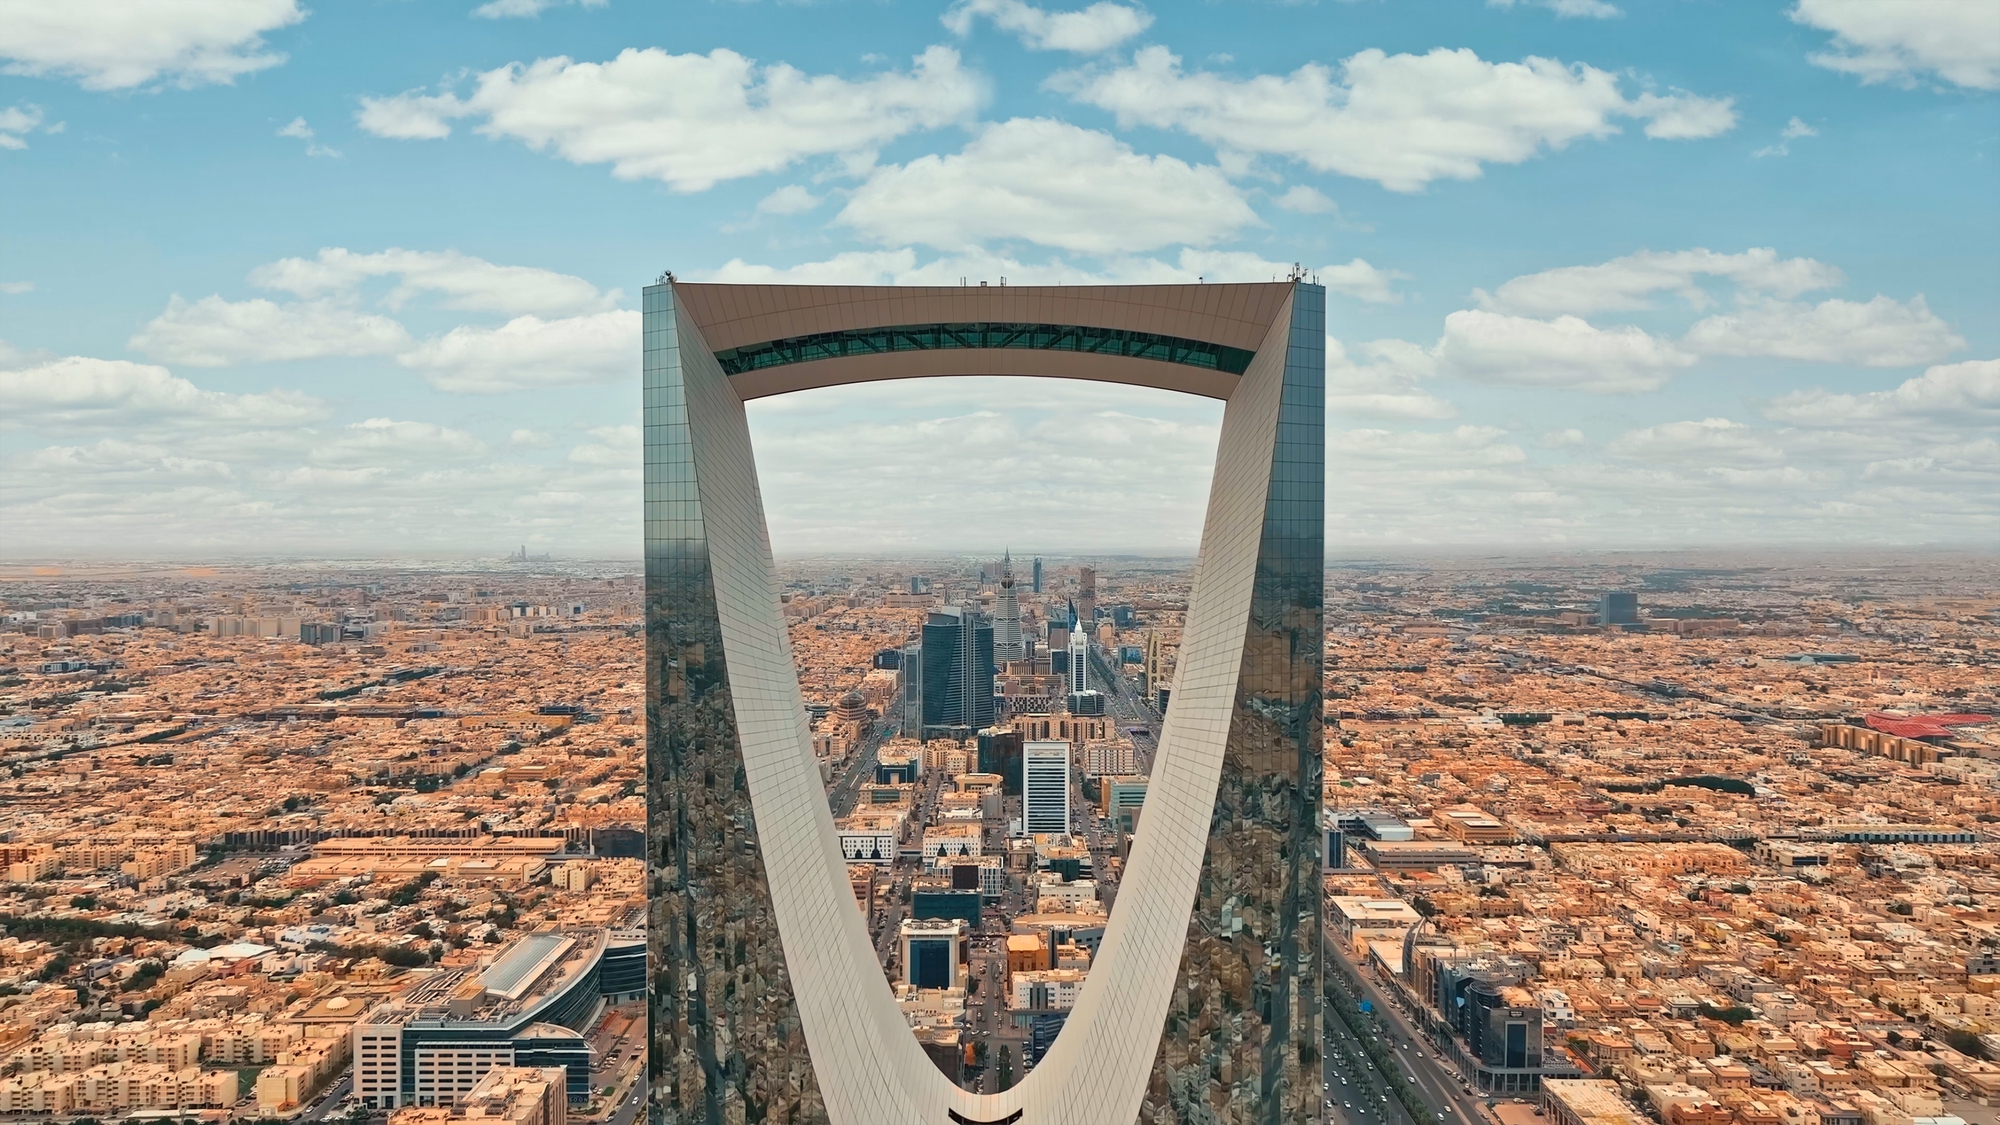 Эр-Рияд, столица Саудовской Аравии, примет Всемирную выставку в 2030 году